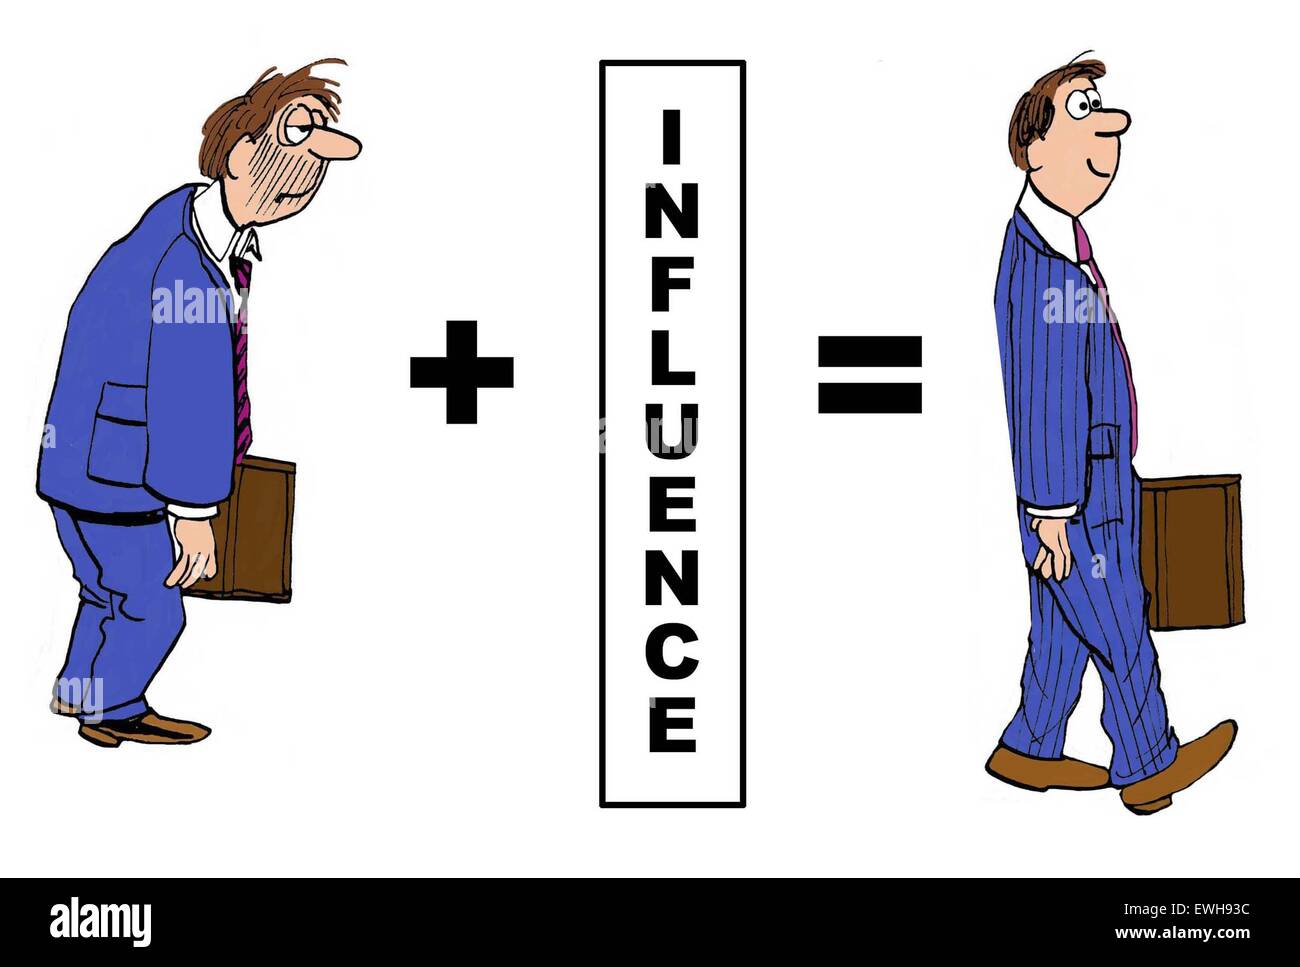 Cartoon negocio mostrando el impacto positivo de "influencia" sobre el empresario. Foto de stock